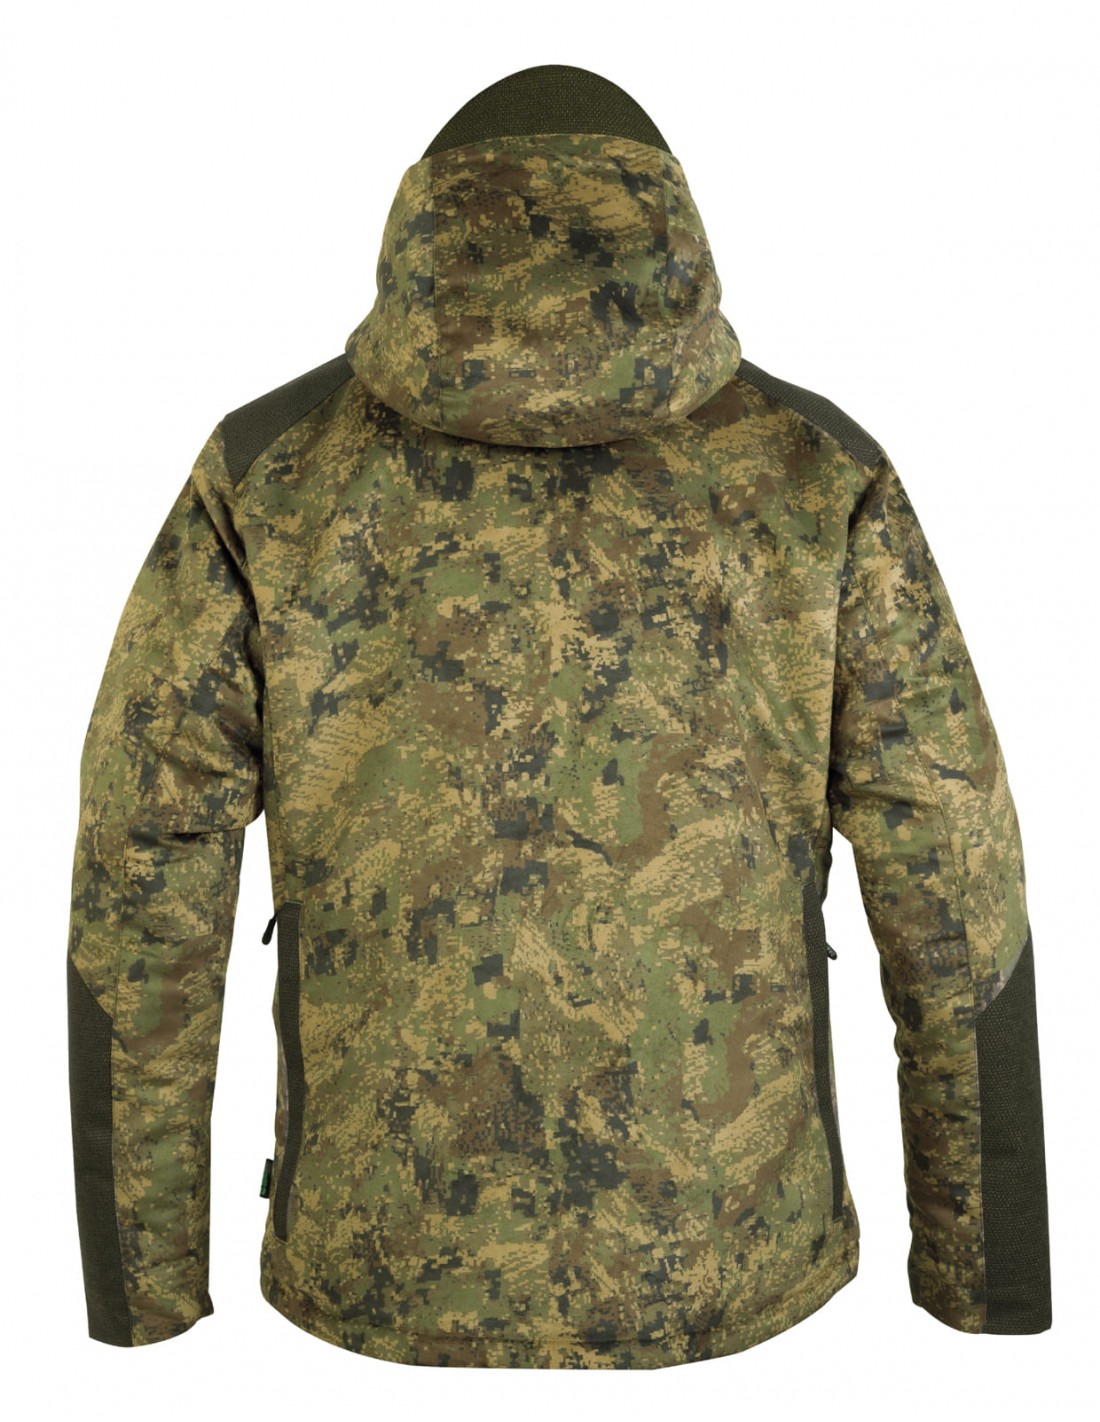 Hart Skade: mejor ropa de caza para frío extremo - Calzados Villadangos